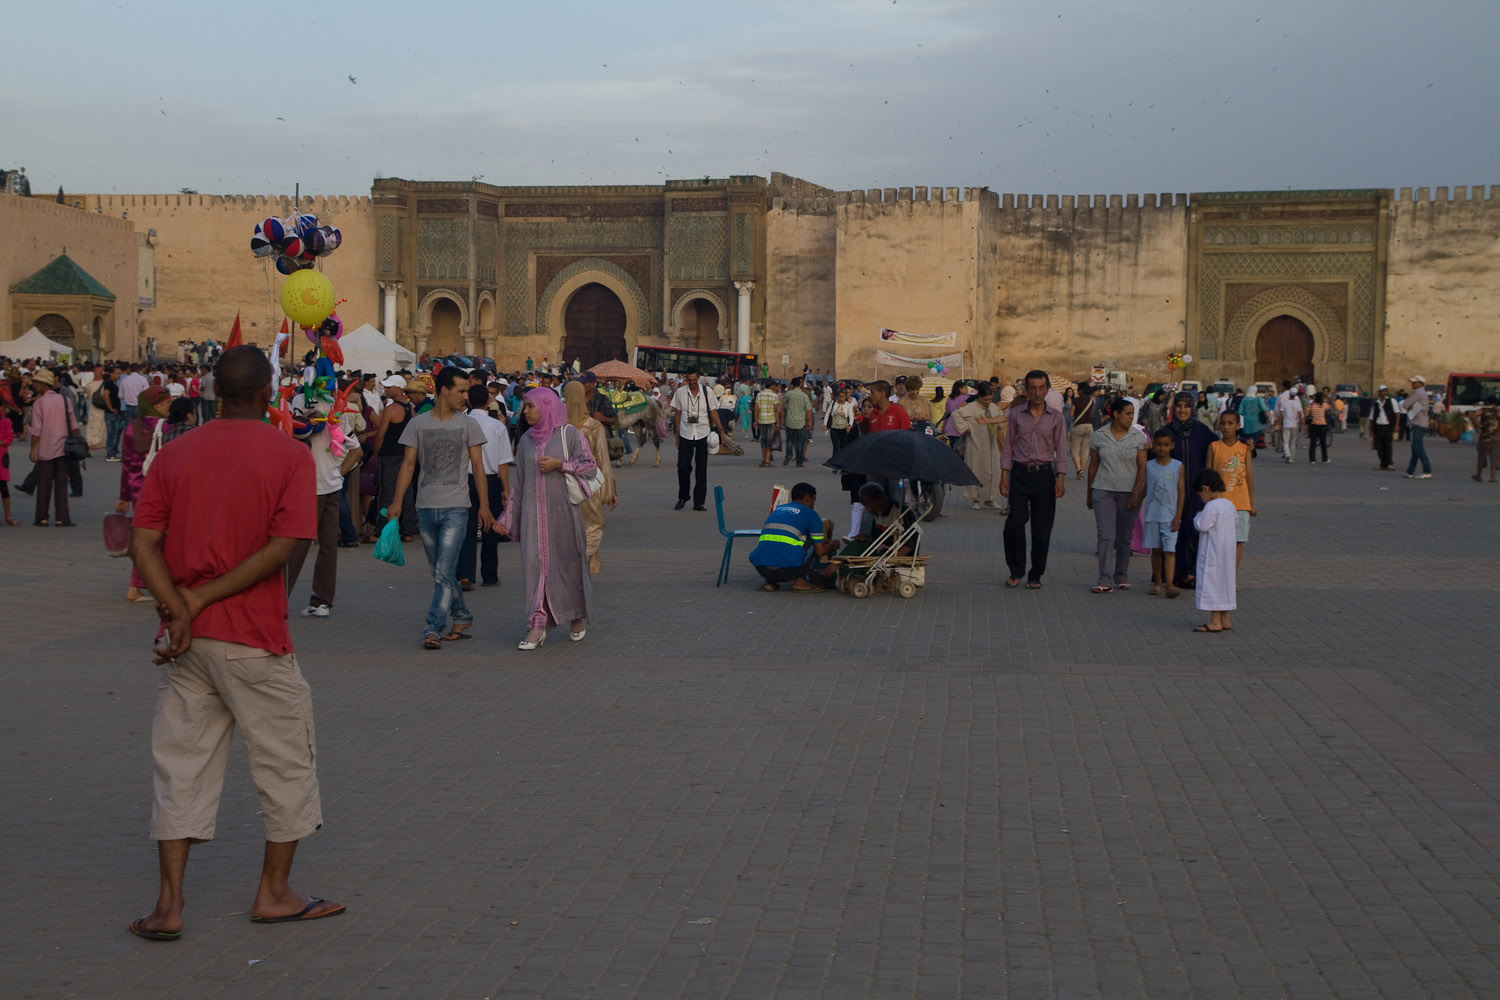 Una tarde en la Plaza el Hedim - Meknès, Marruecos